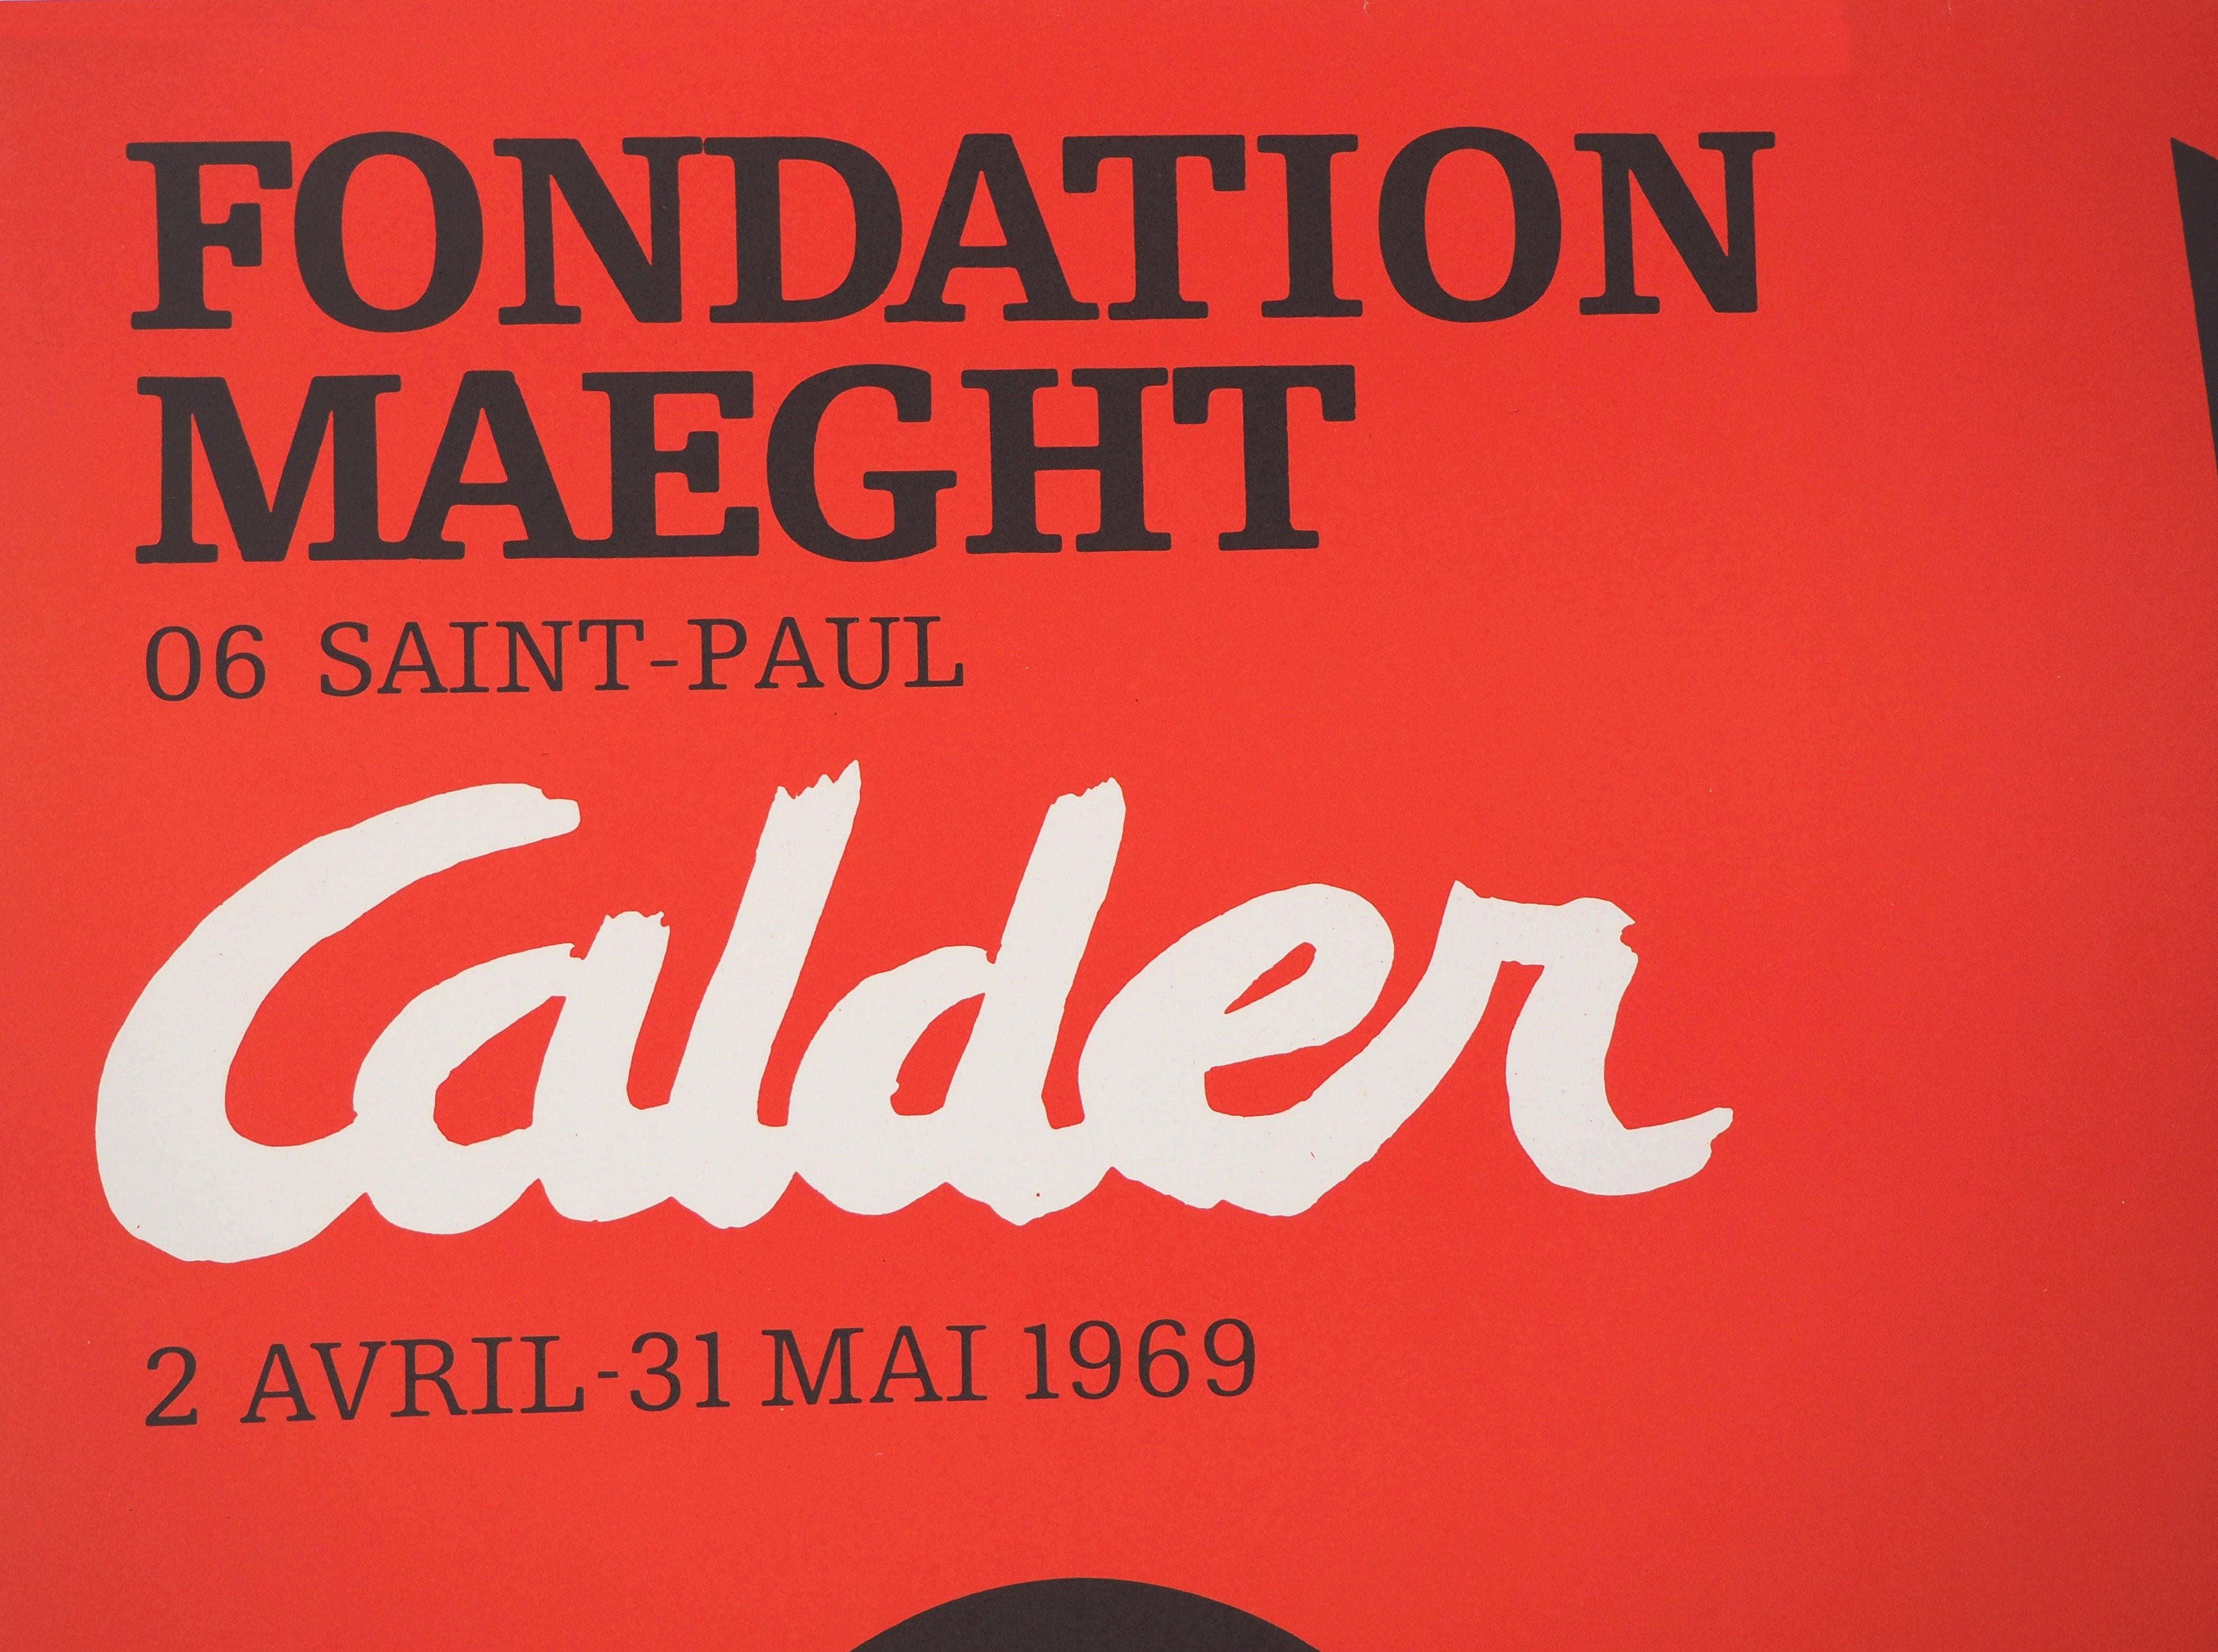 Noir ombre (Stabiles sculptures) - Affiche lithographique - Maeght 1969 - Rouge Abstract Print par (after) Alexander Calder